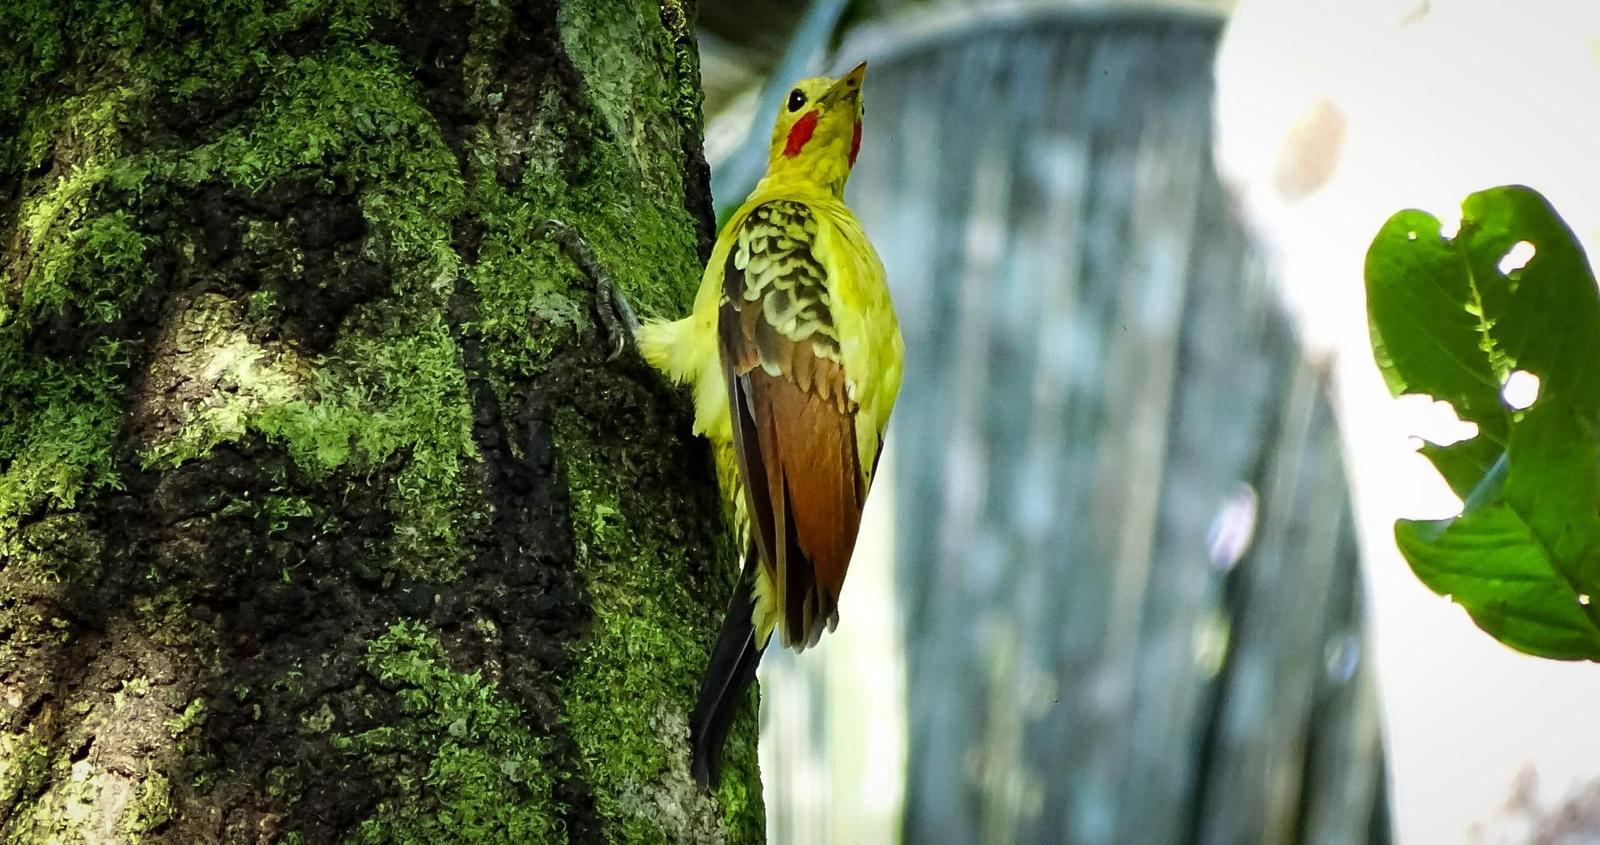 Cream-colored Woodpecker Photo by Julio Delgado